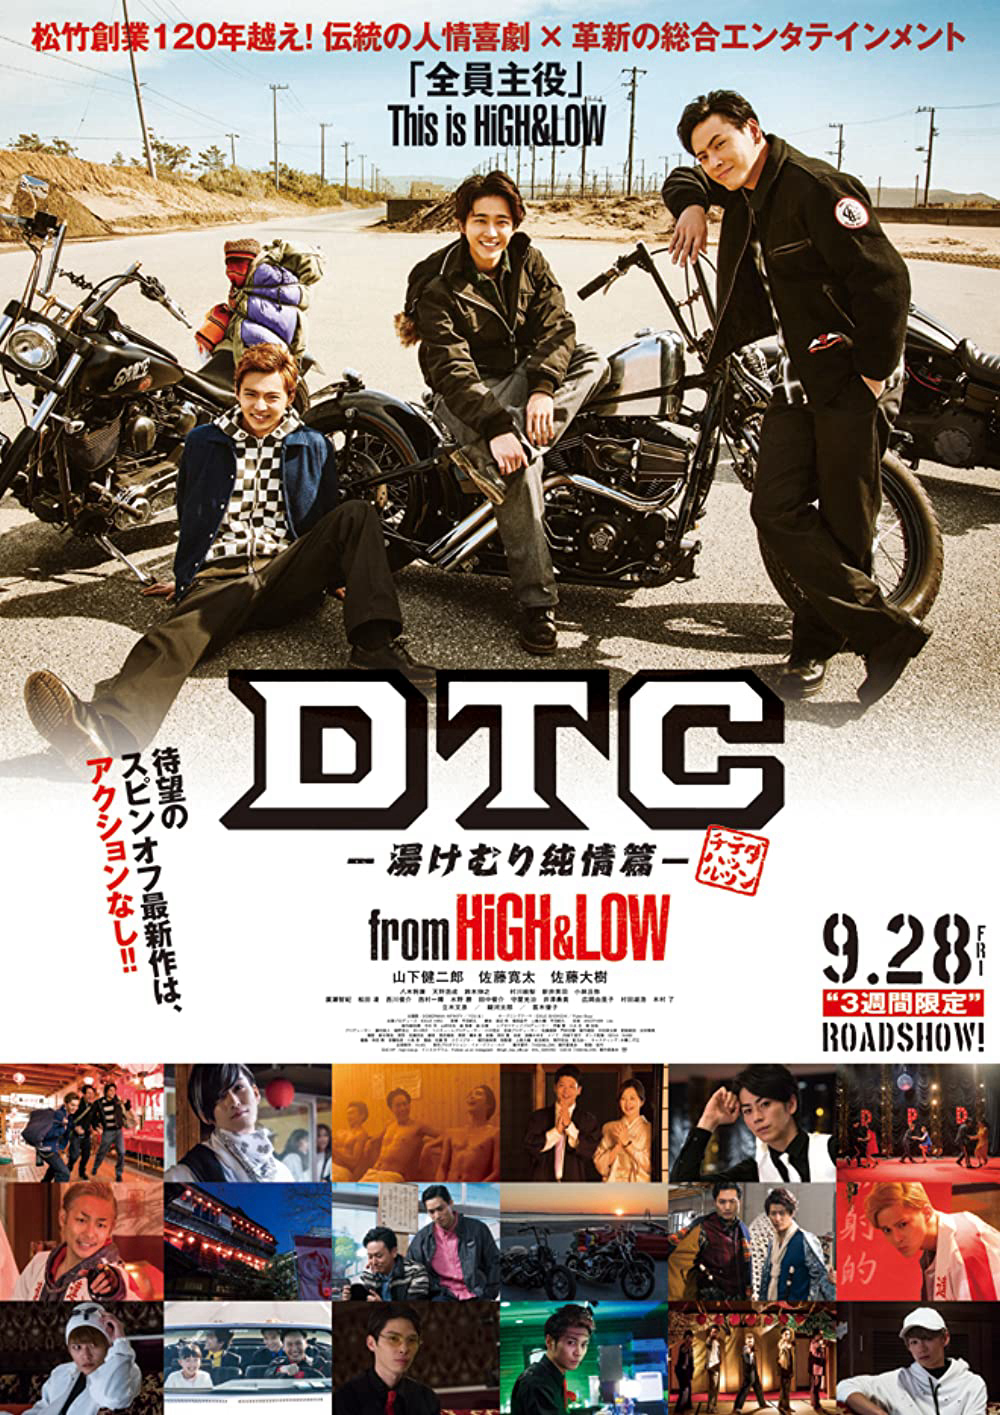 Poster Phim HiGH&LOW - DTC: Suối nước nóng (DTC Yukemuri Junjo Hen From High & Low)